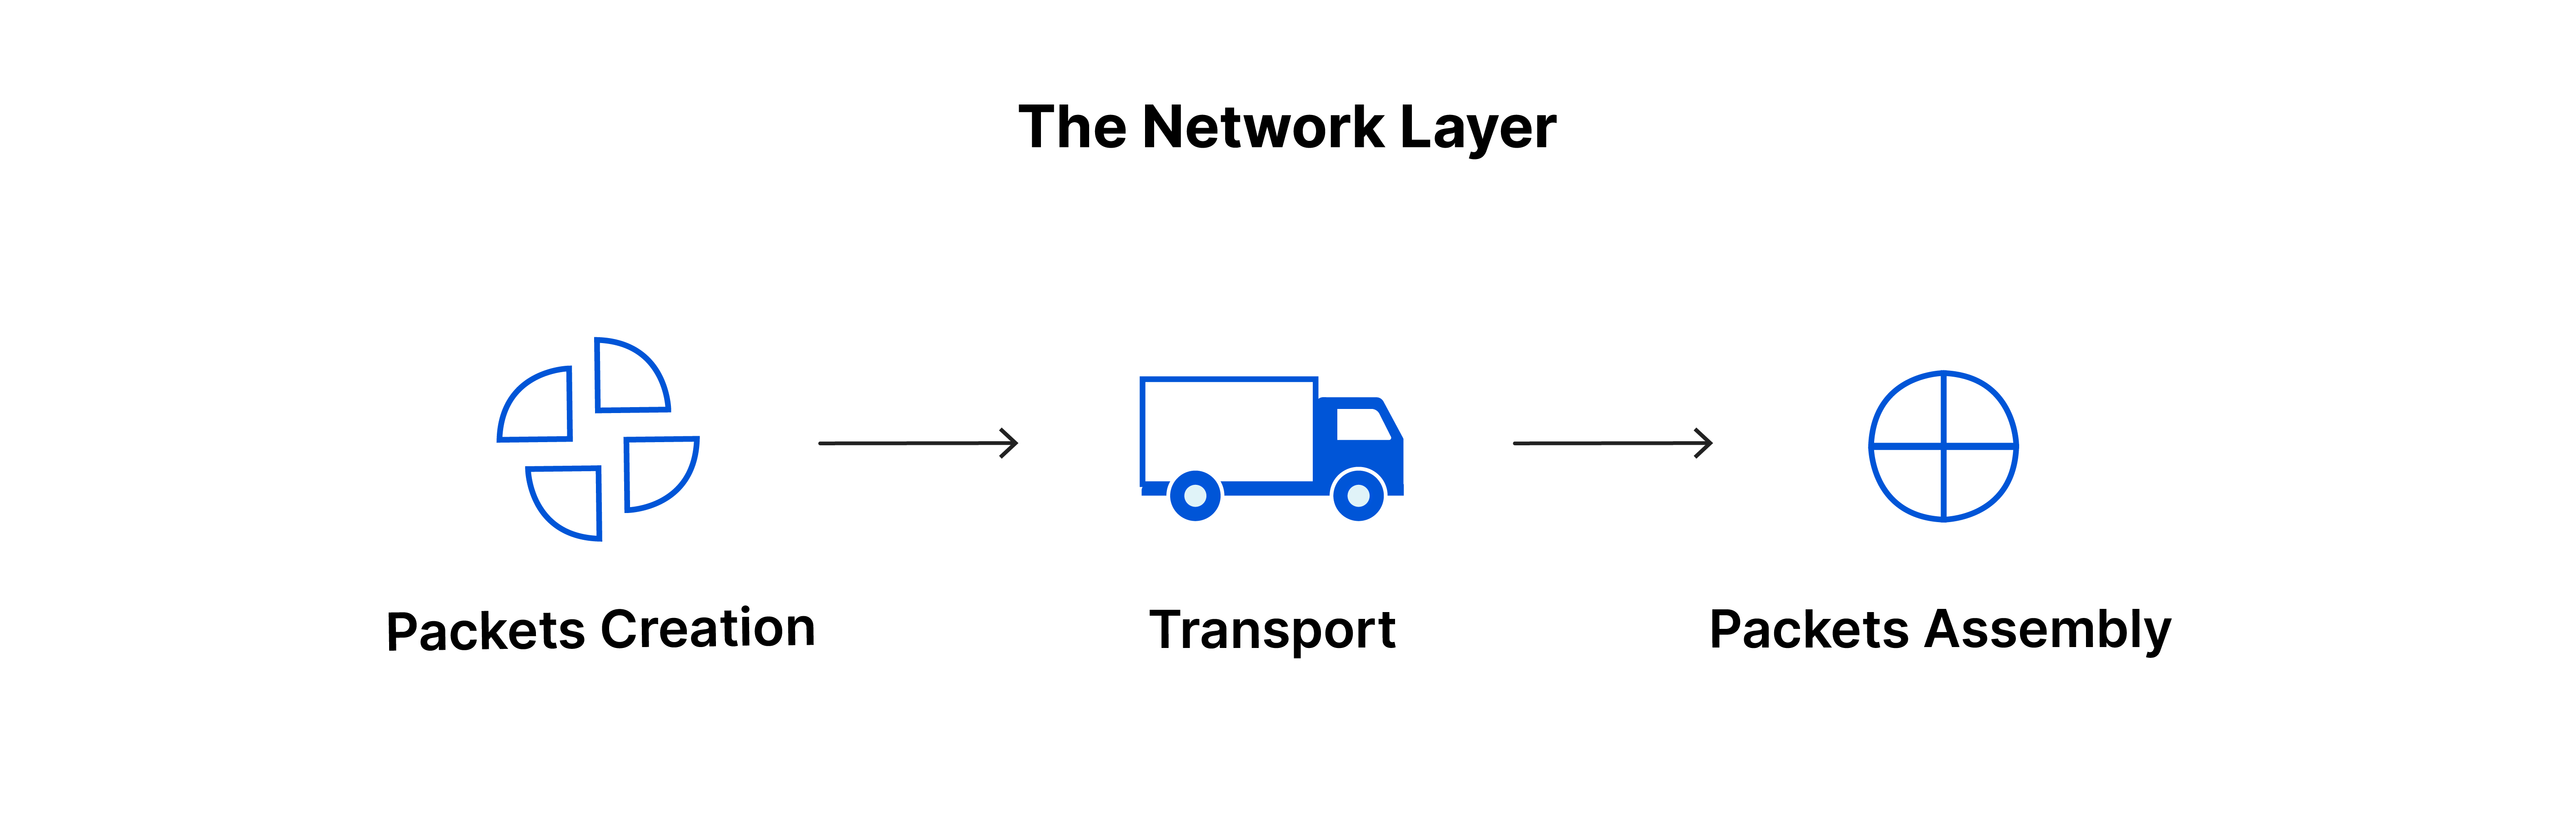 A camada de rede: criação de pacotes, transporte, montagem de pacotes